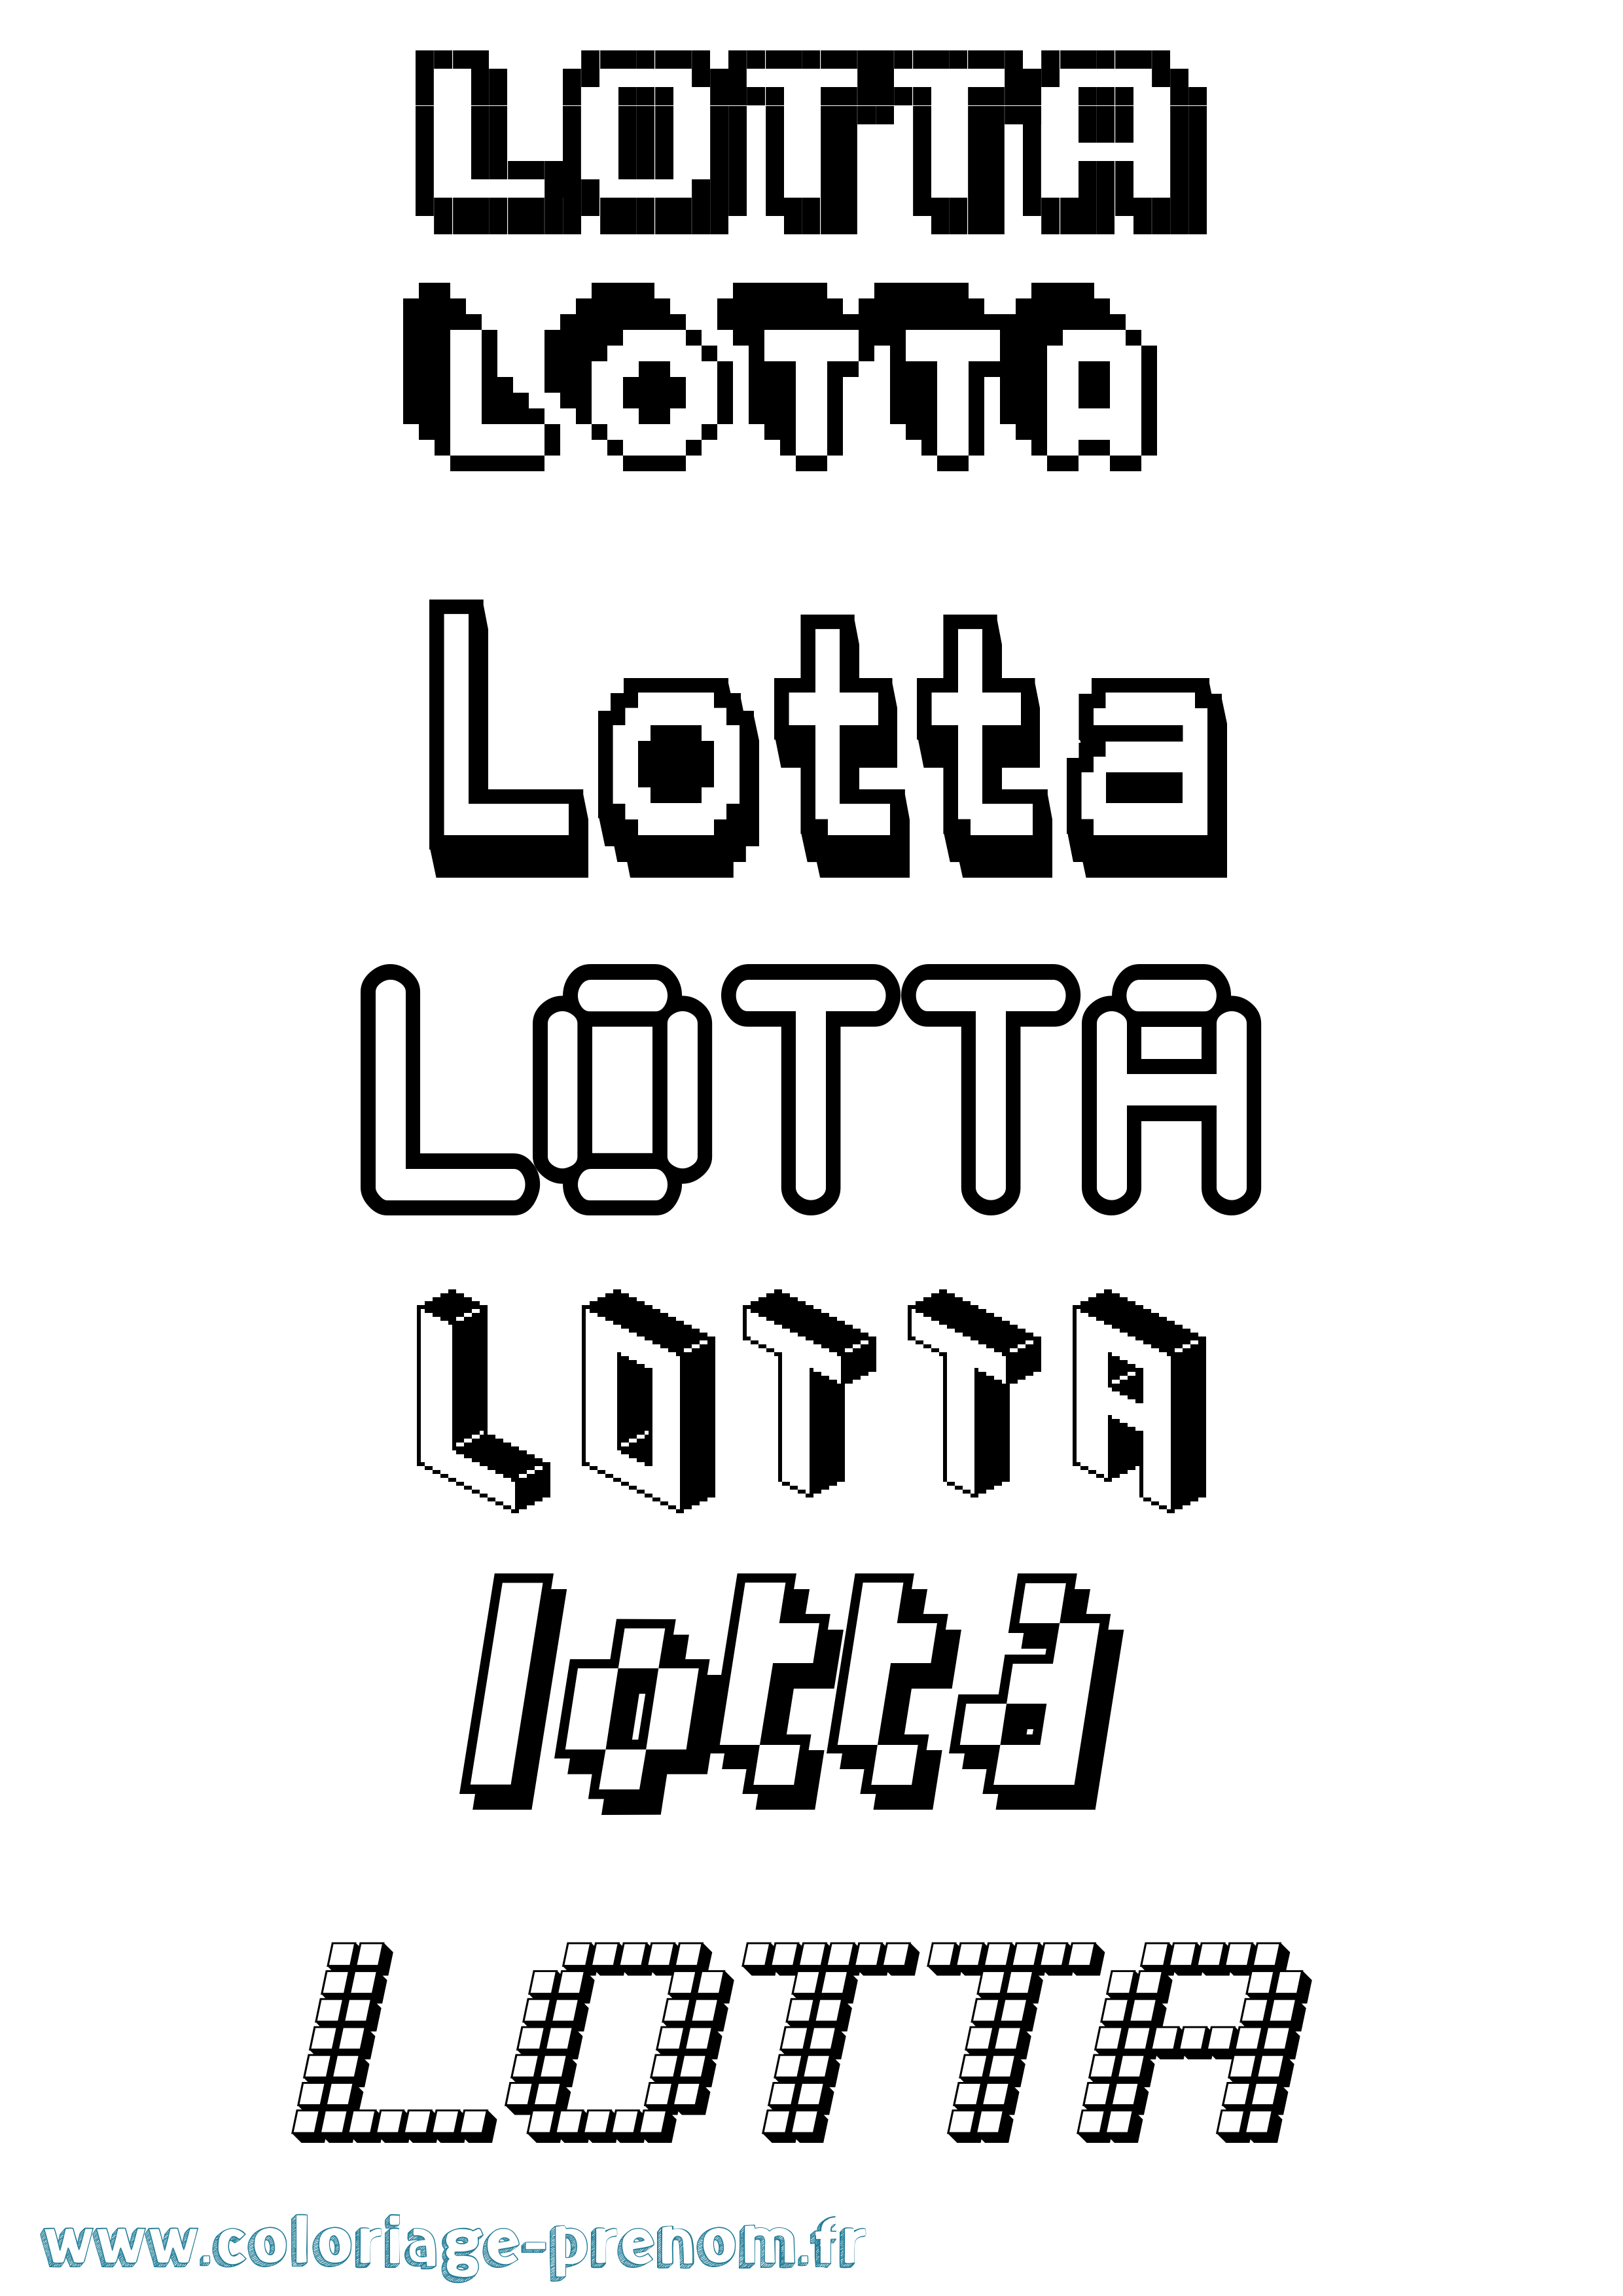 Coloriage prénom Lotta Pixel